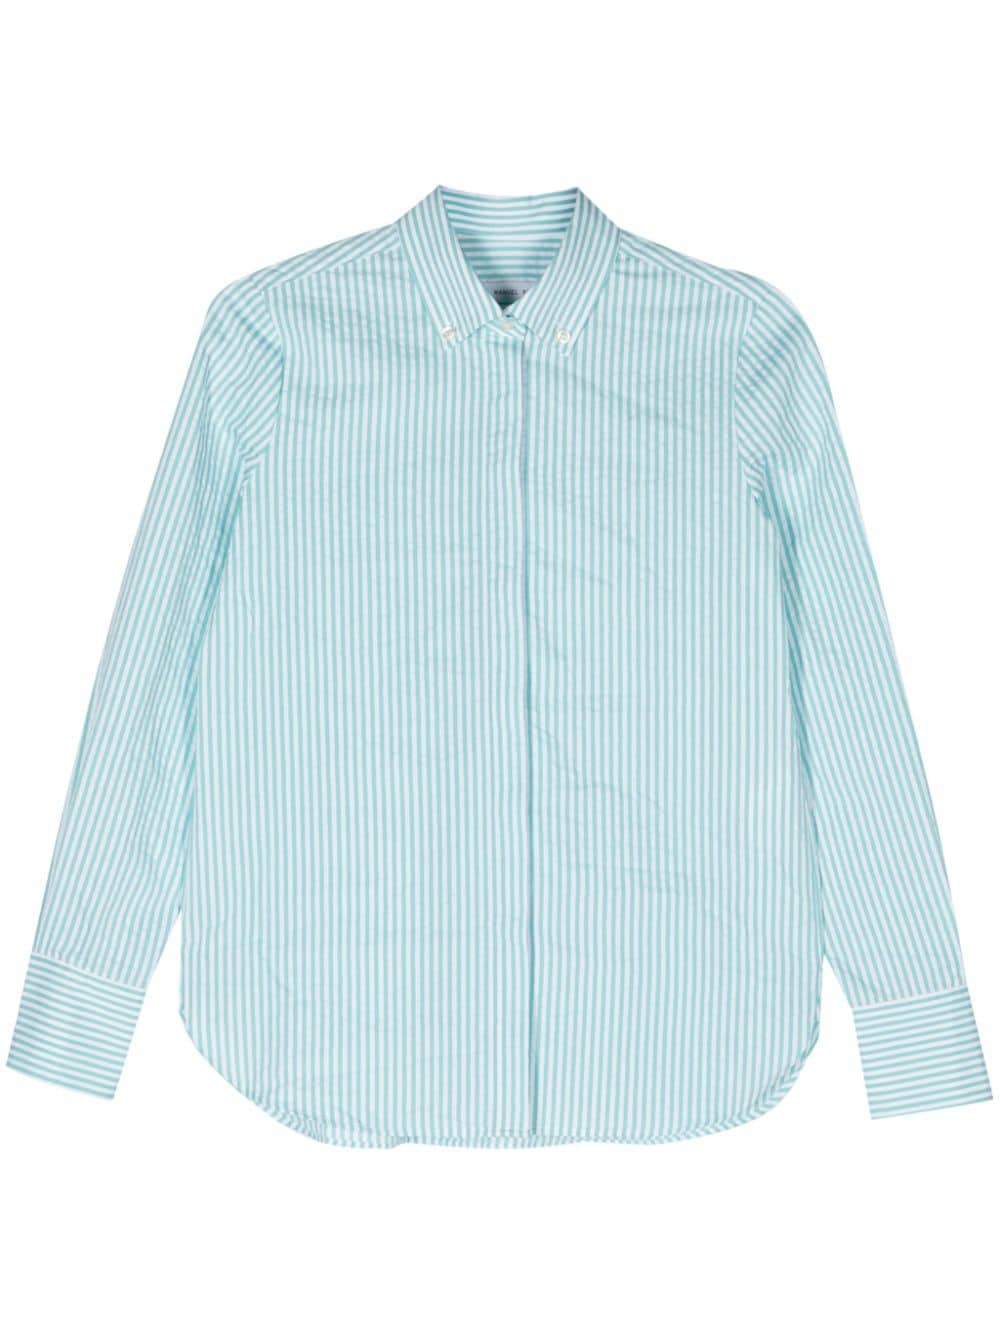 Manuel Ritz striped seersucker shirt - Blue von Manuel Ritz